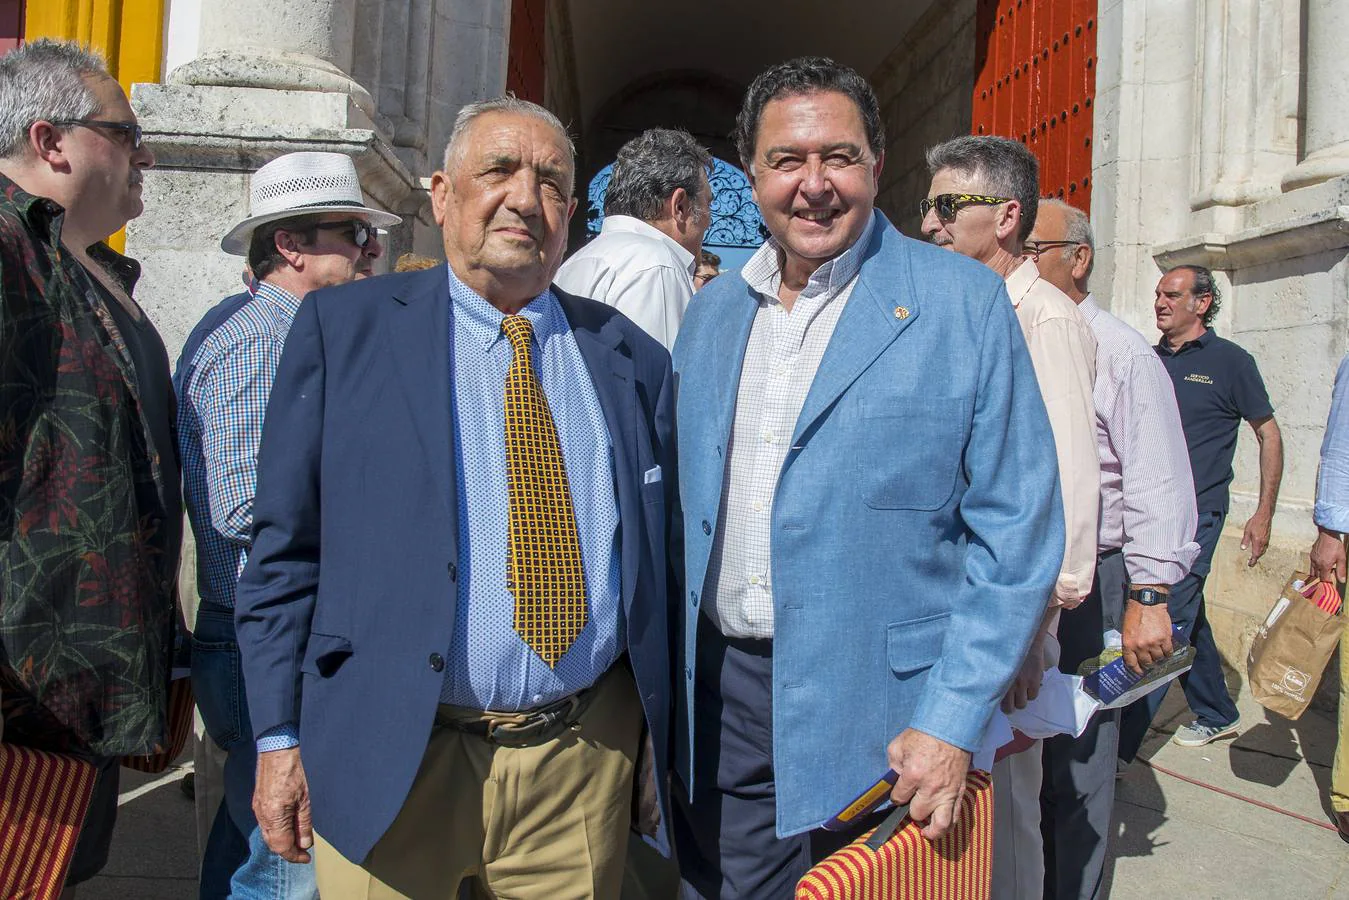 Ruperto Vázquez y Tomás Campuzano